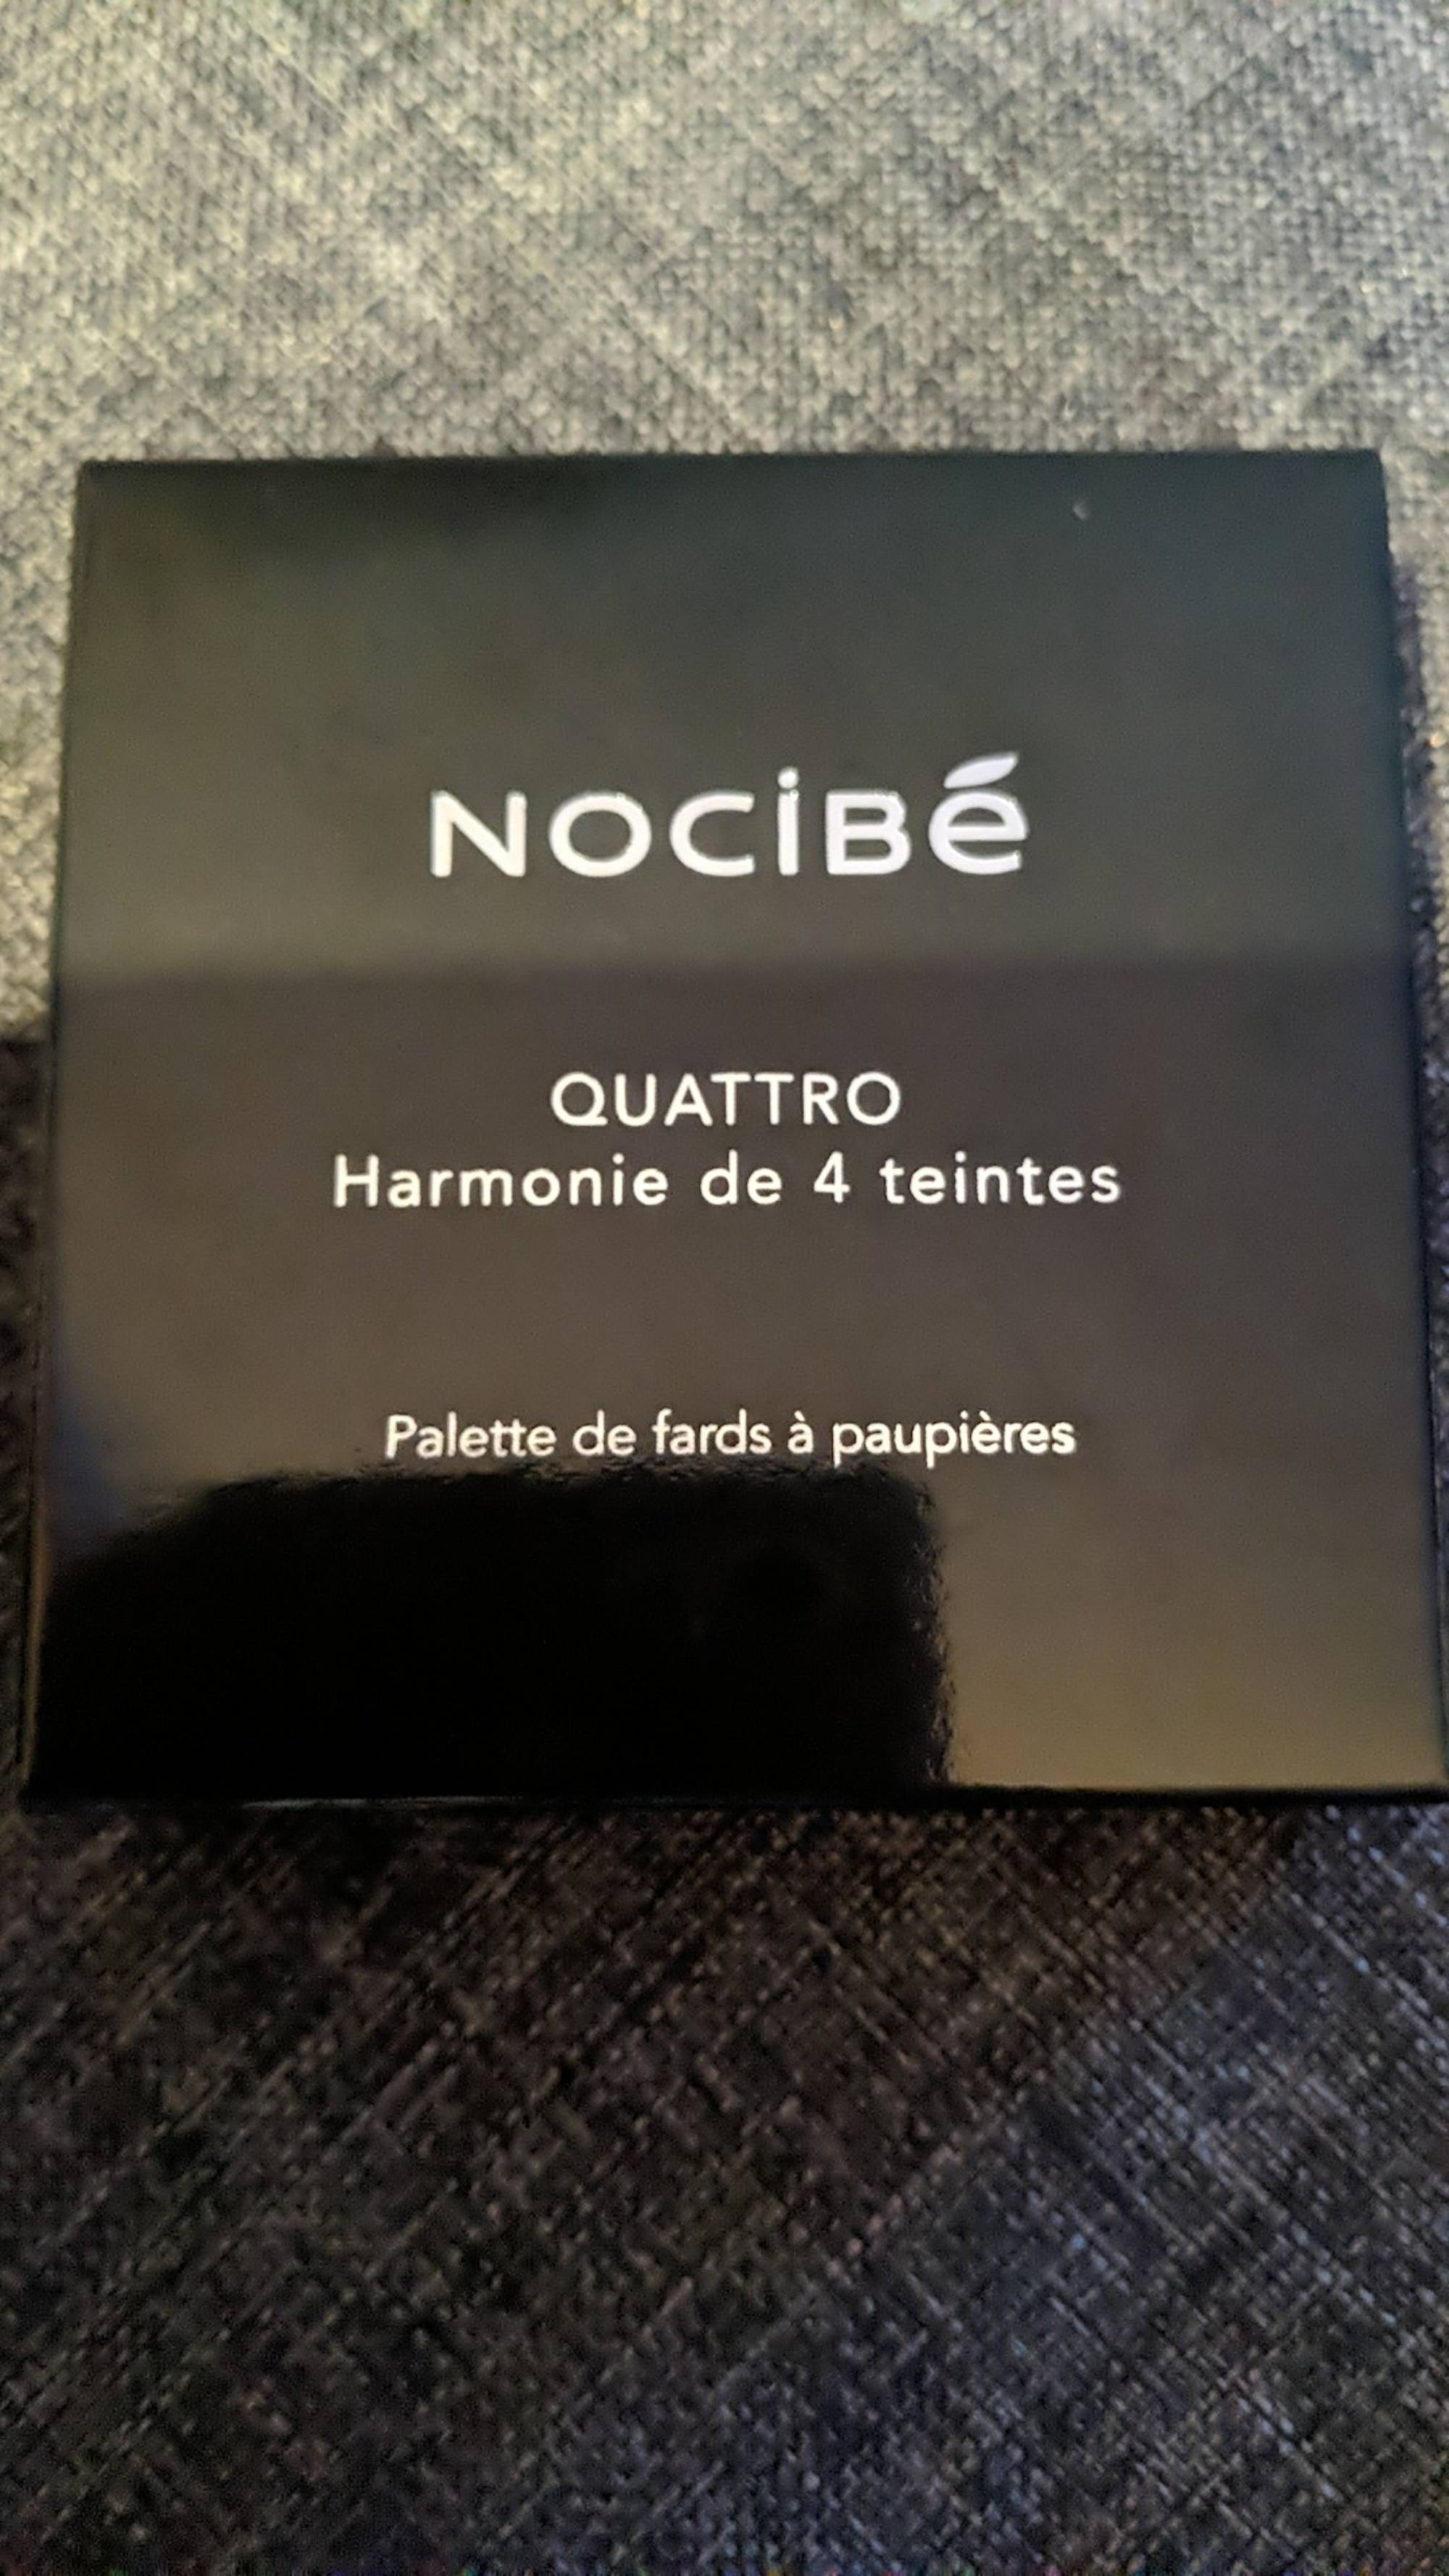 NOCIBÉ - Quattro - Palette de fards à paupières